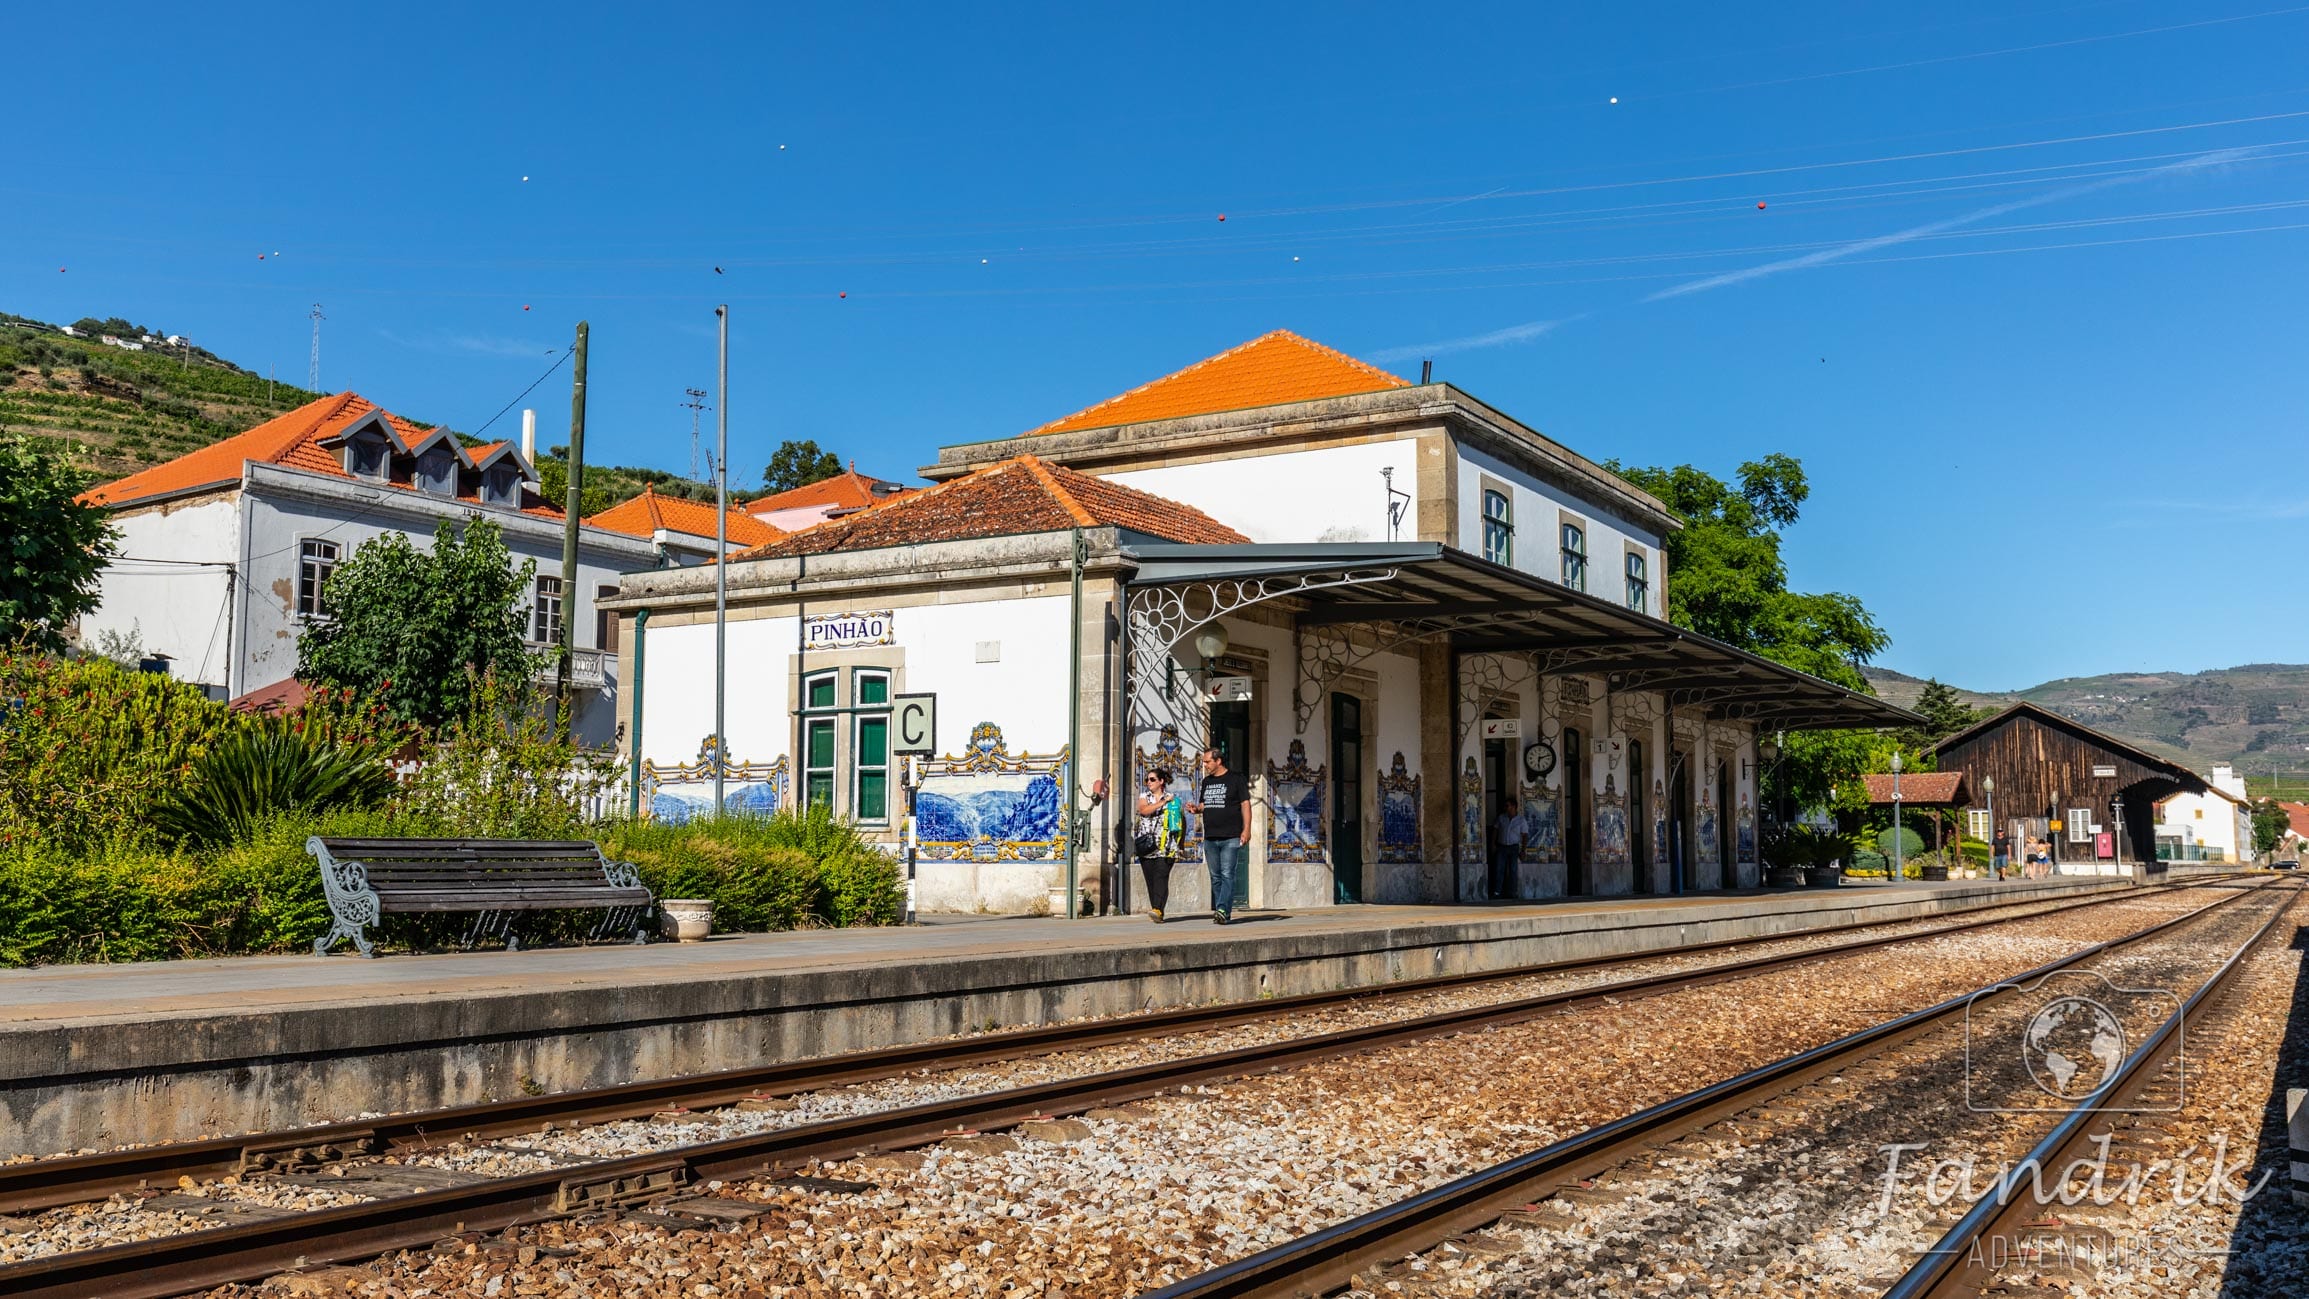 Weißes Bahnhofsgebäude mit rotem Dach und Gleise im Vordergrund